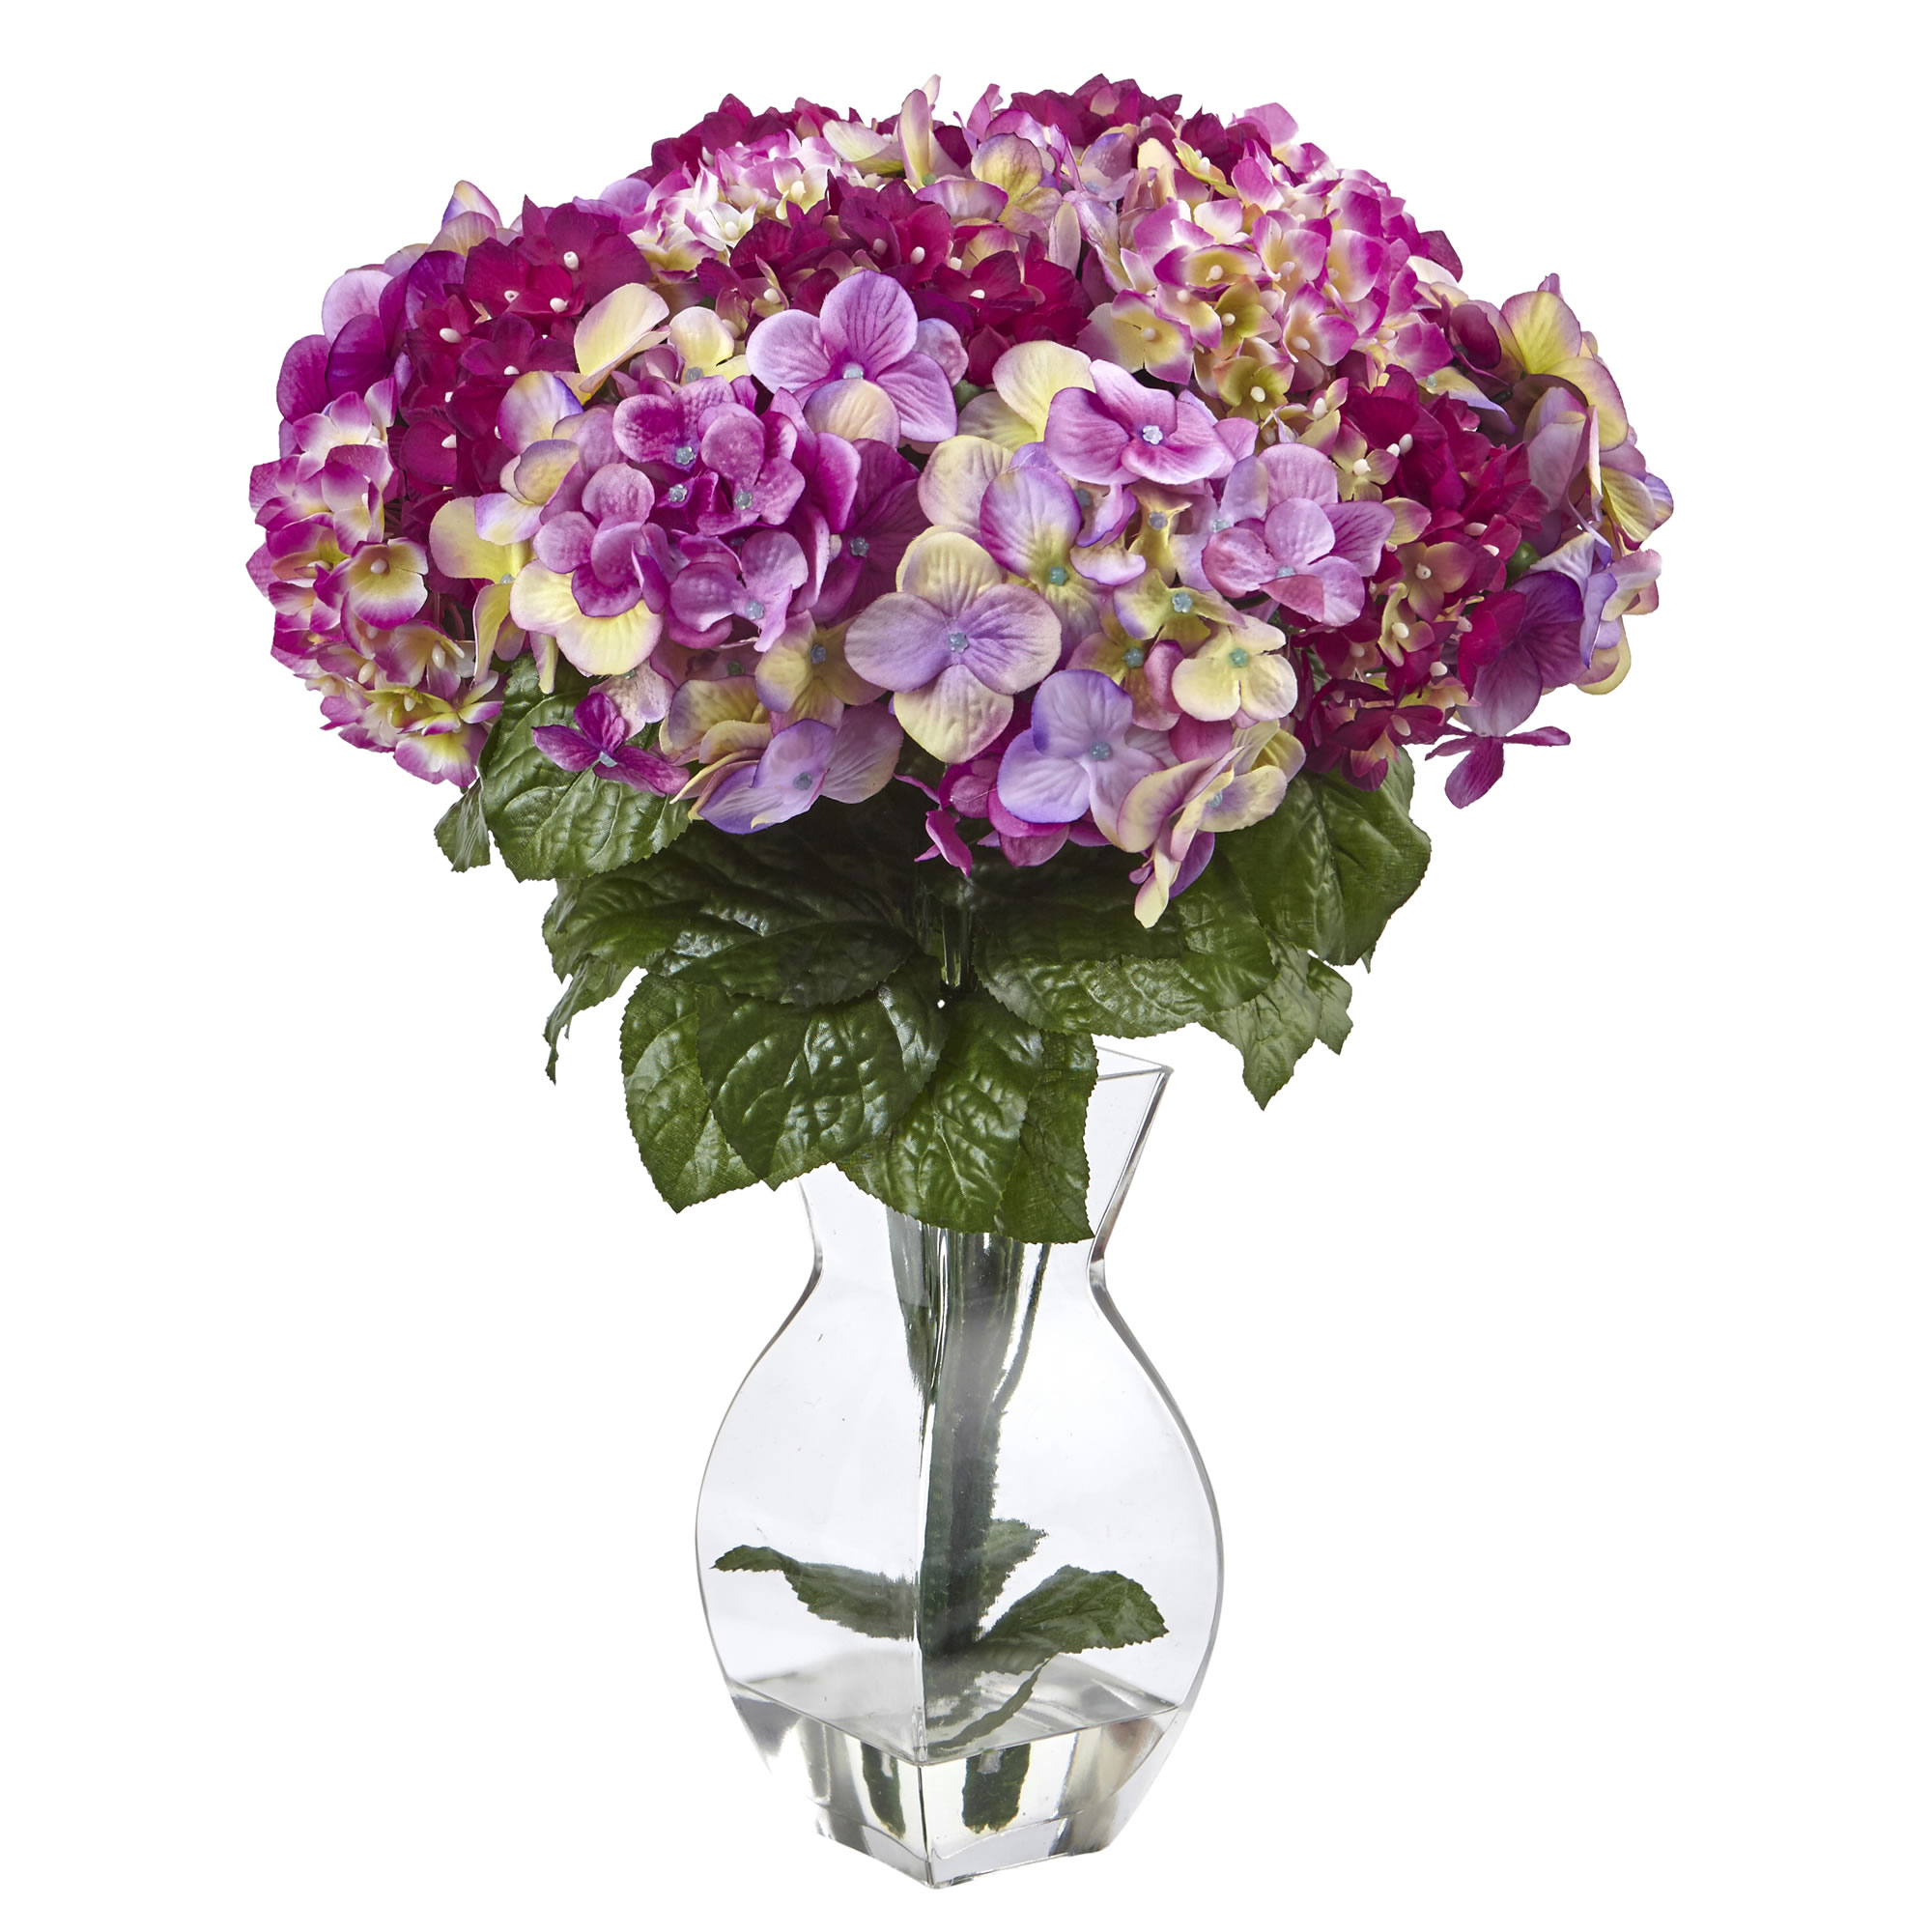 20 Inch Beauty Hydrangea In Vase